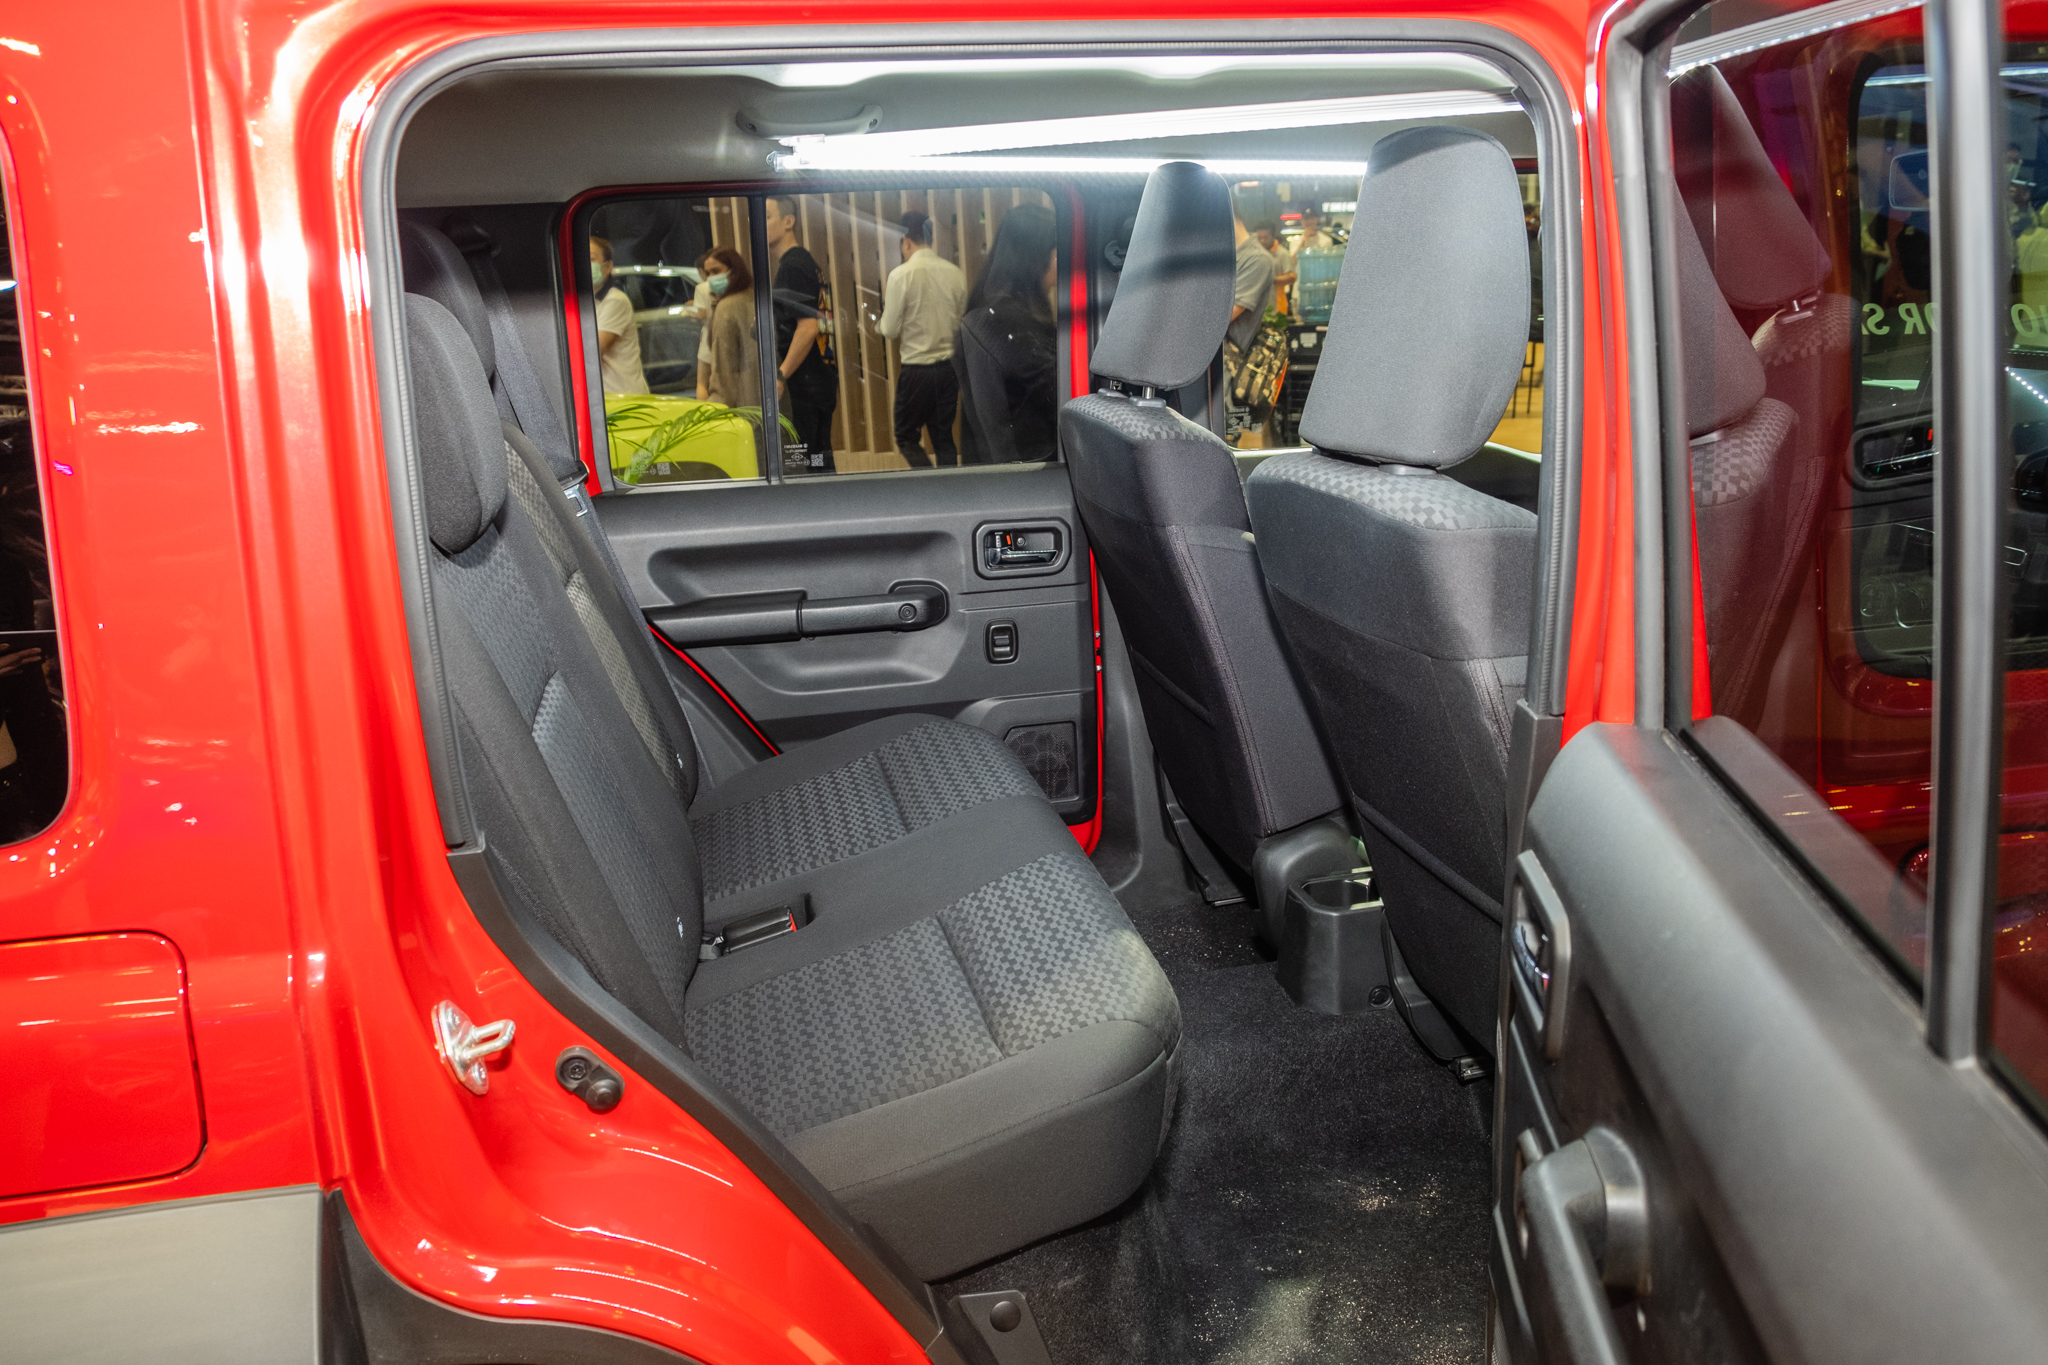 Xem thử Suzuki Jimny 5 cửa sắp bán tại ĐNÁ: Thực dụng hơn, nhiều khách Việt đang mong chờ - Ảnh 11.